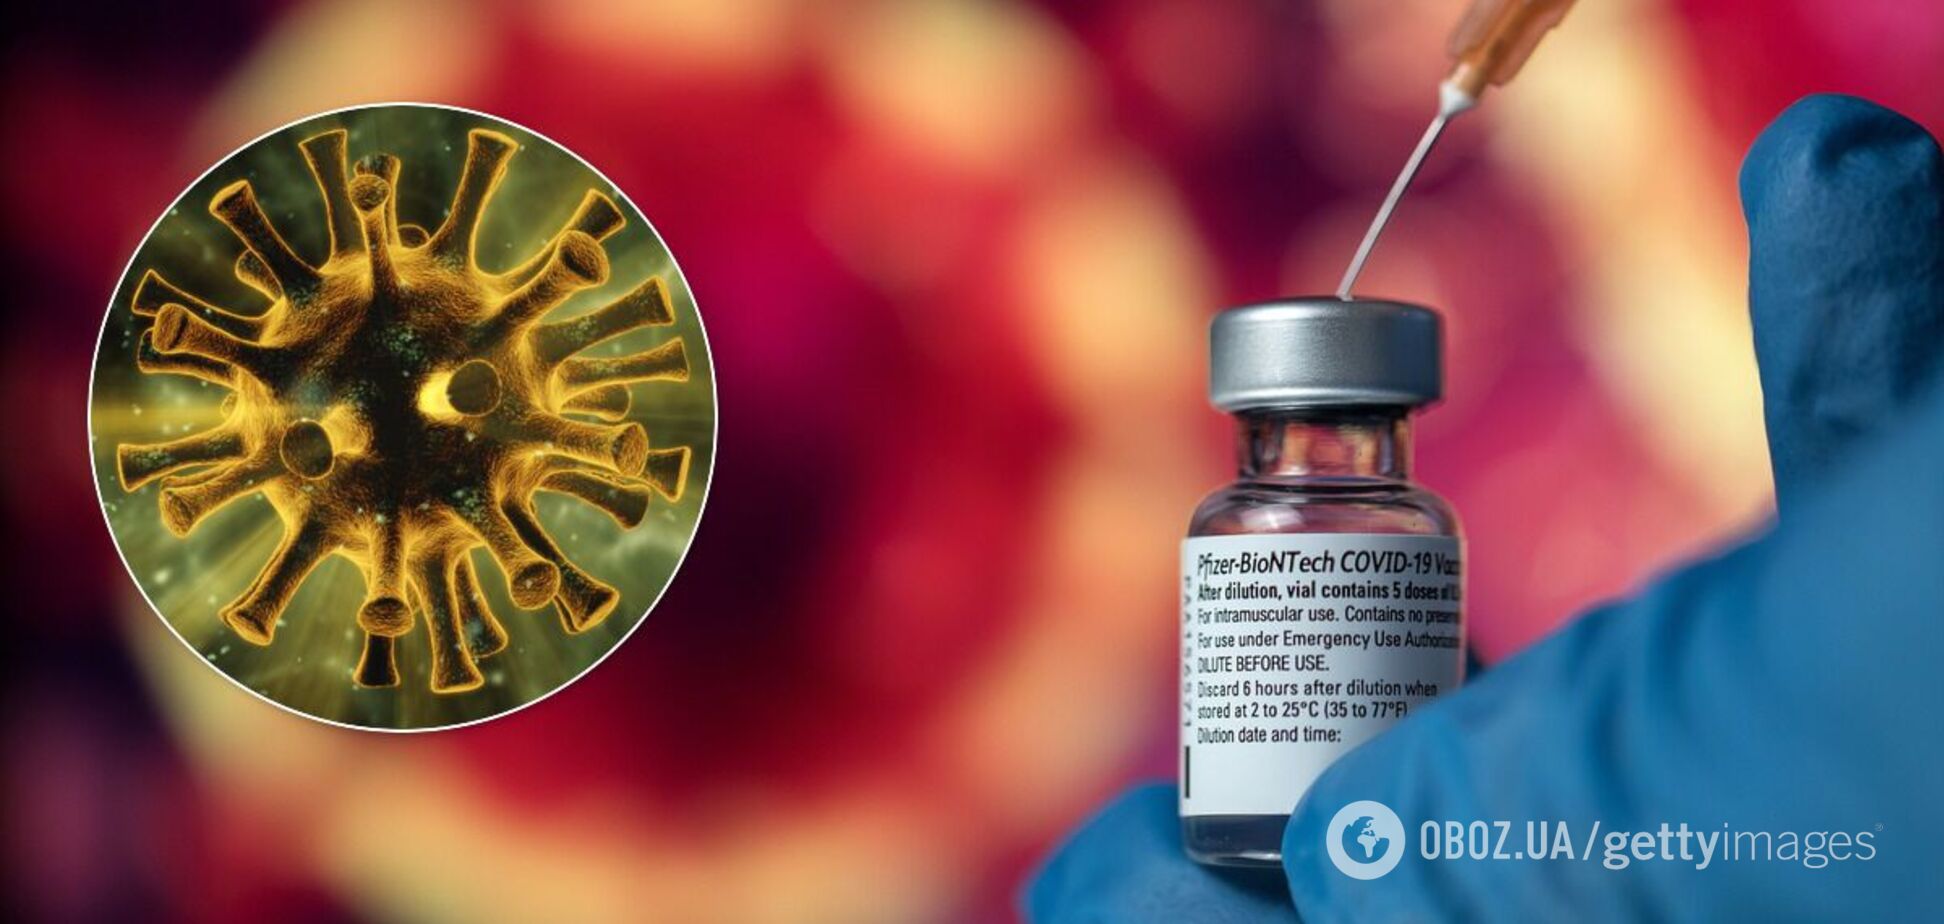 Вакцина Pfizer эффективна против мутантов COVID-19 из Британии и ЮАР – исследование